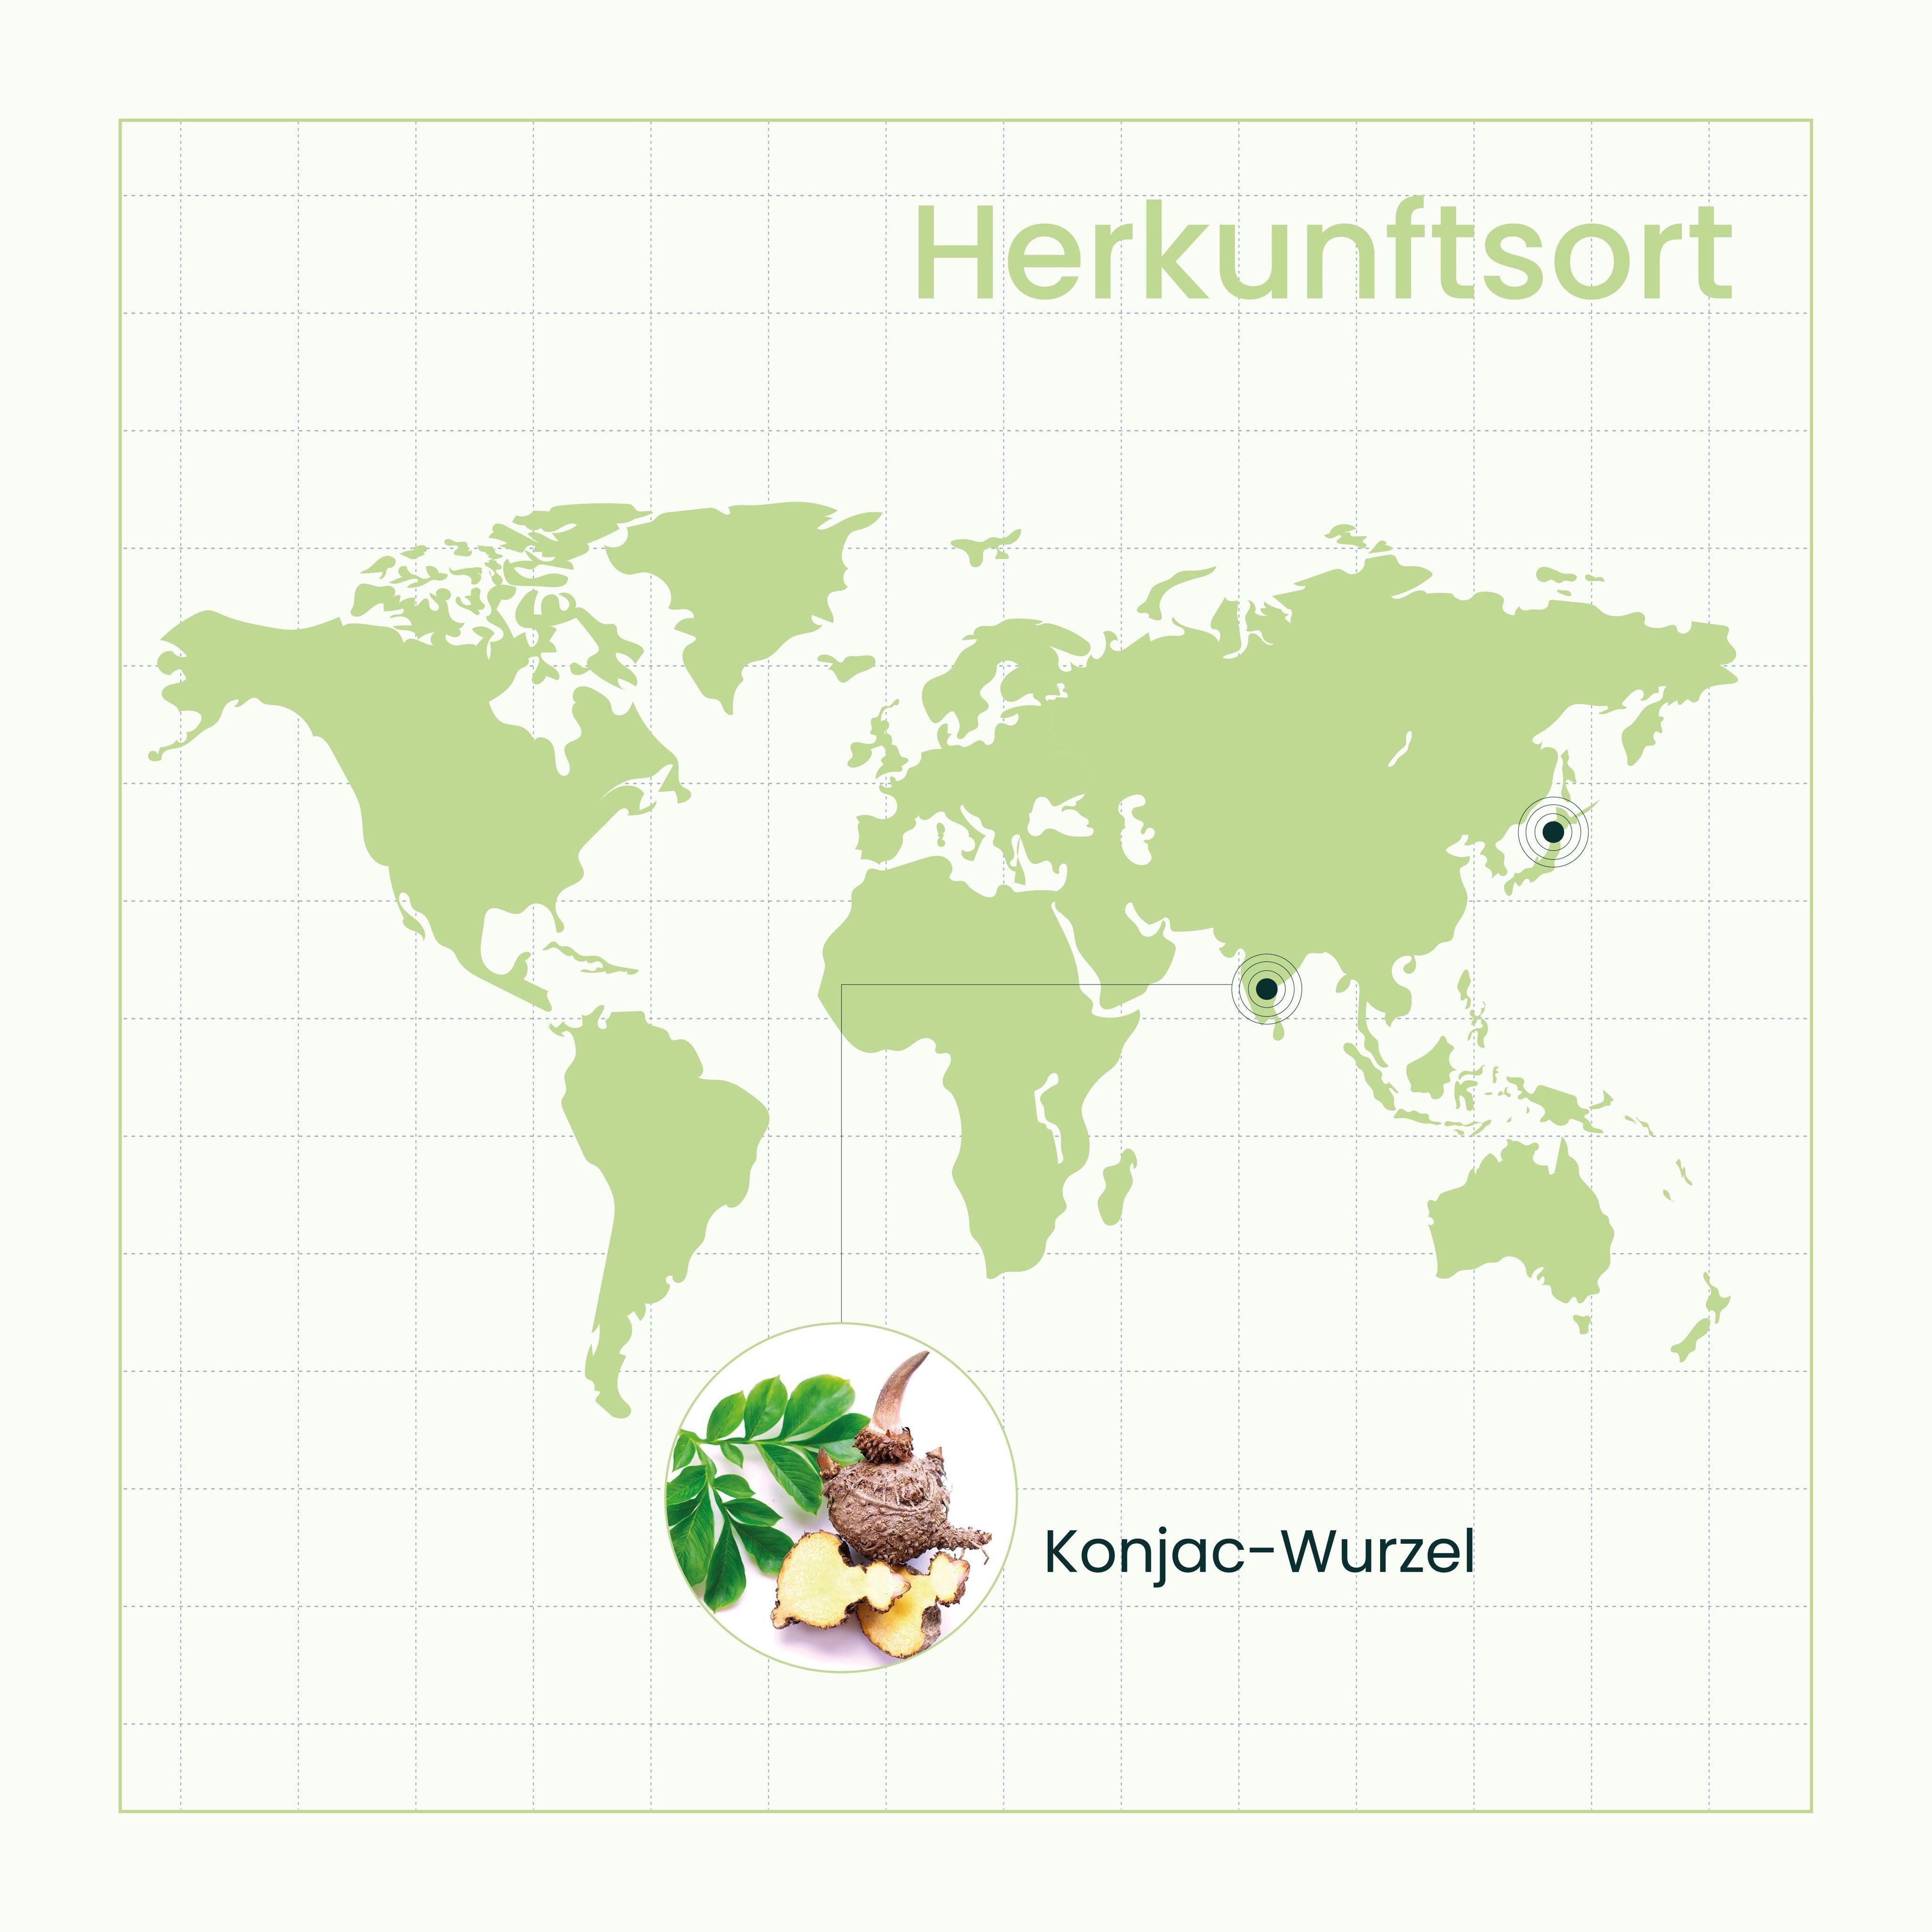 Weltkarte in grünem Farbton mit hervorgehobenen Standortmarkierungen und einem Bild der Konjak-Wurzel, veranschaulicht globale Herkunftsorte von Inhaltsstoffen.